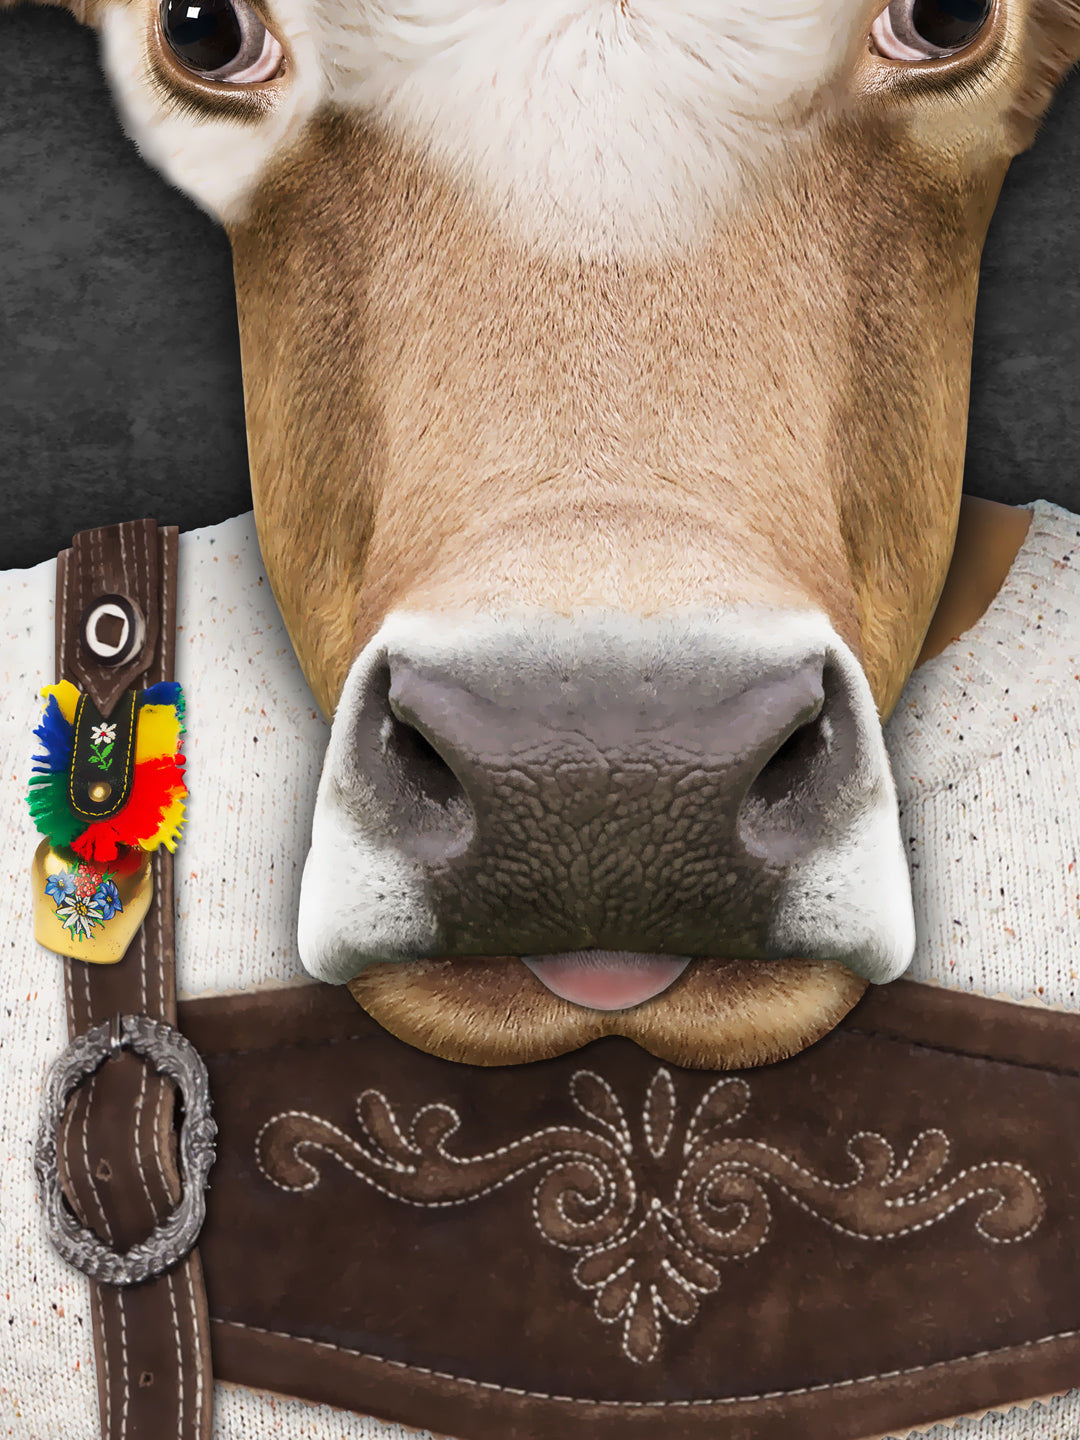 Monsieur La Vache - COW ARTWORK - Edition of 7